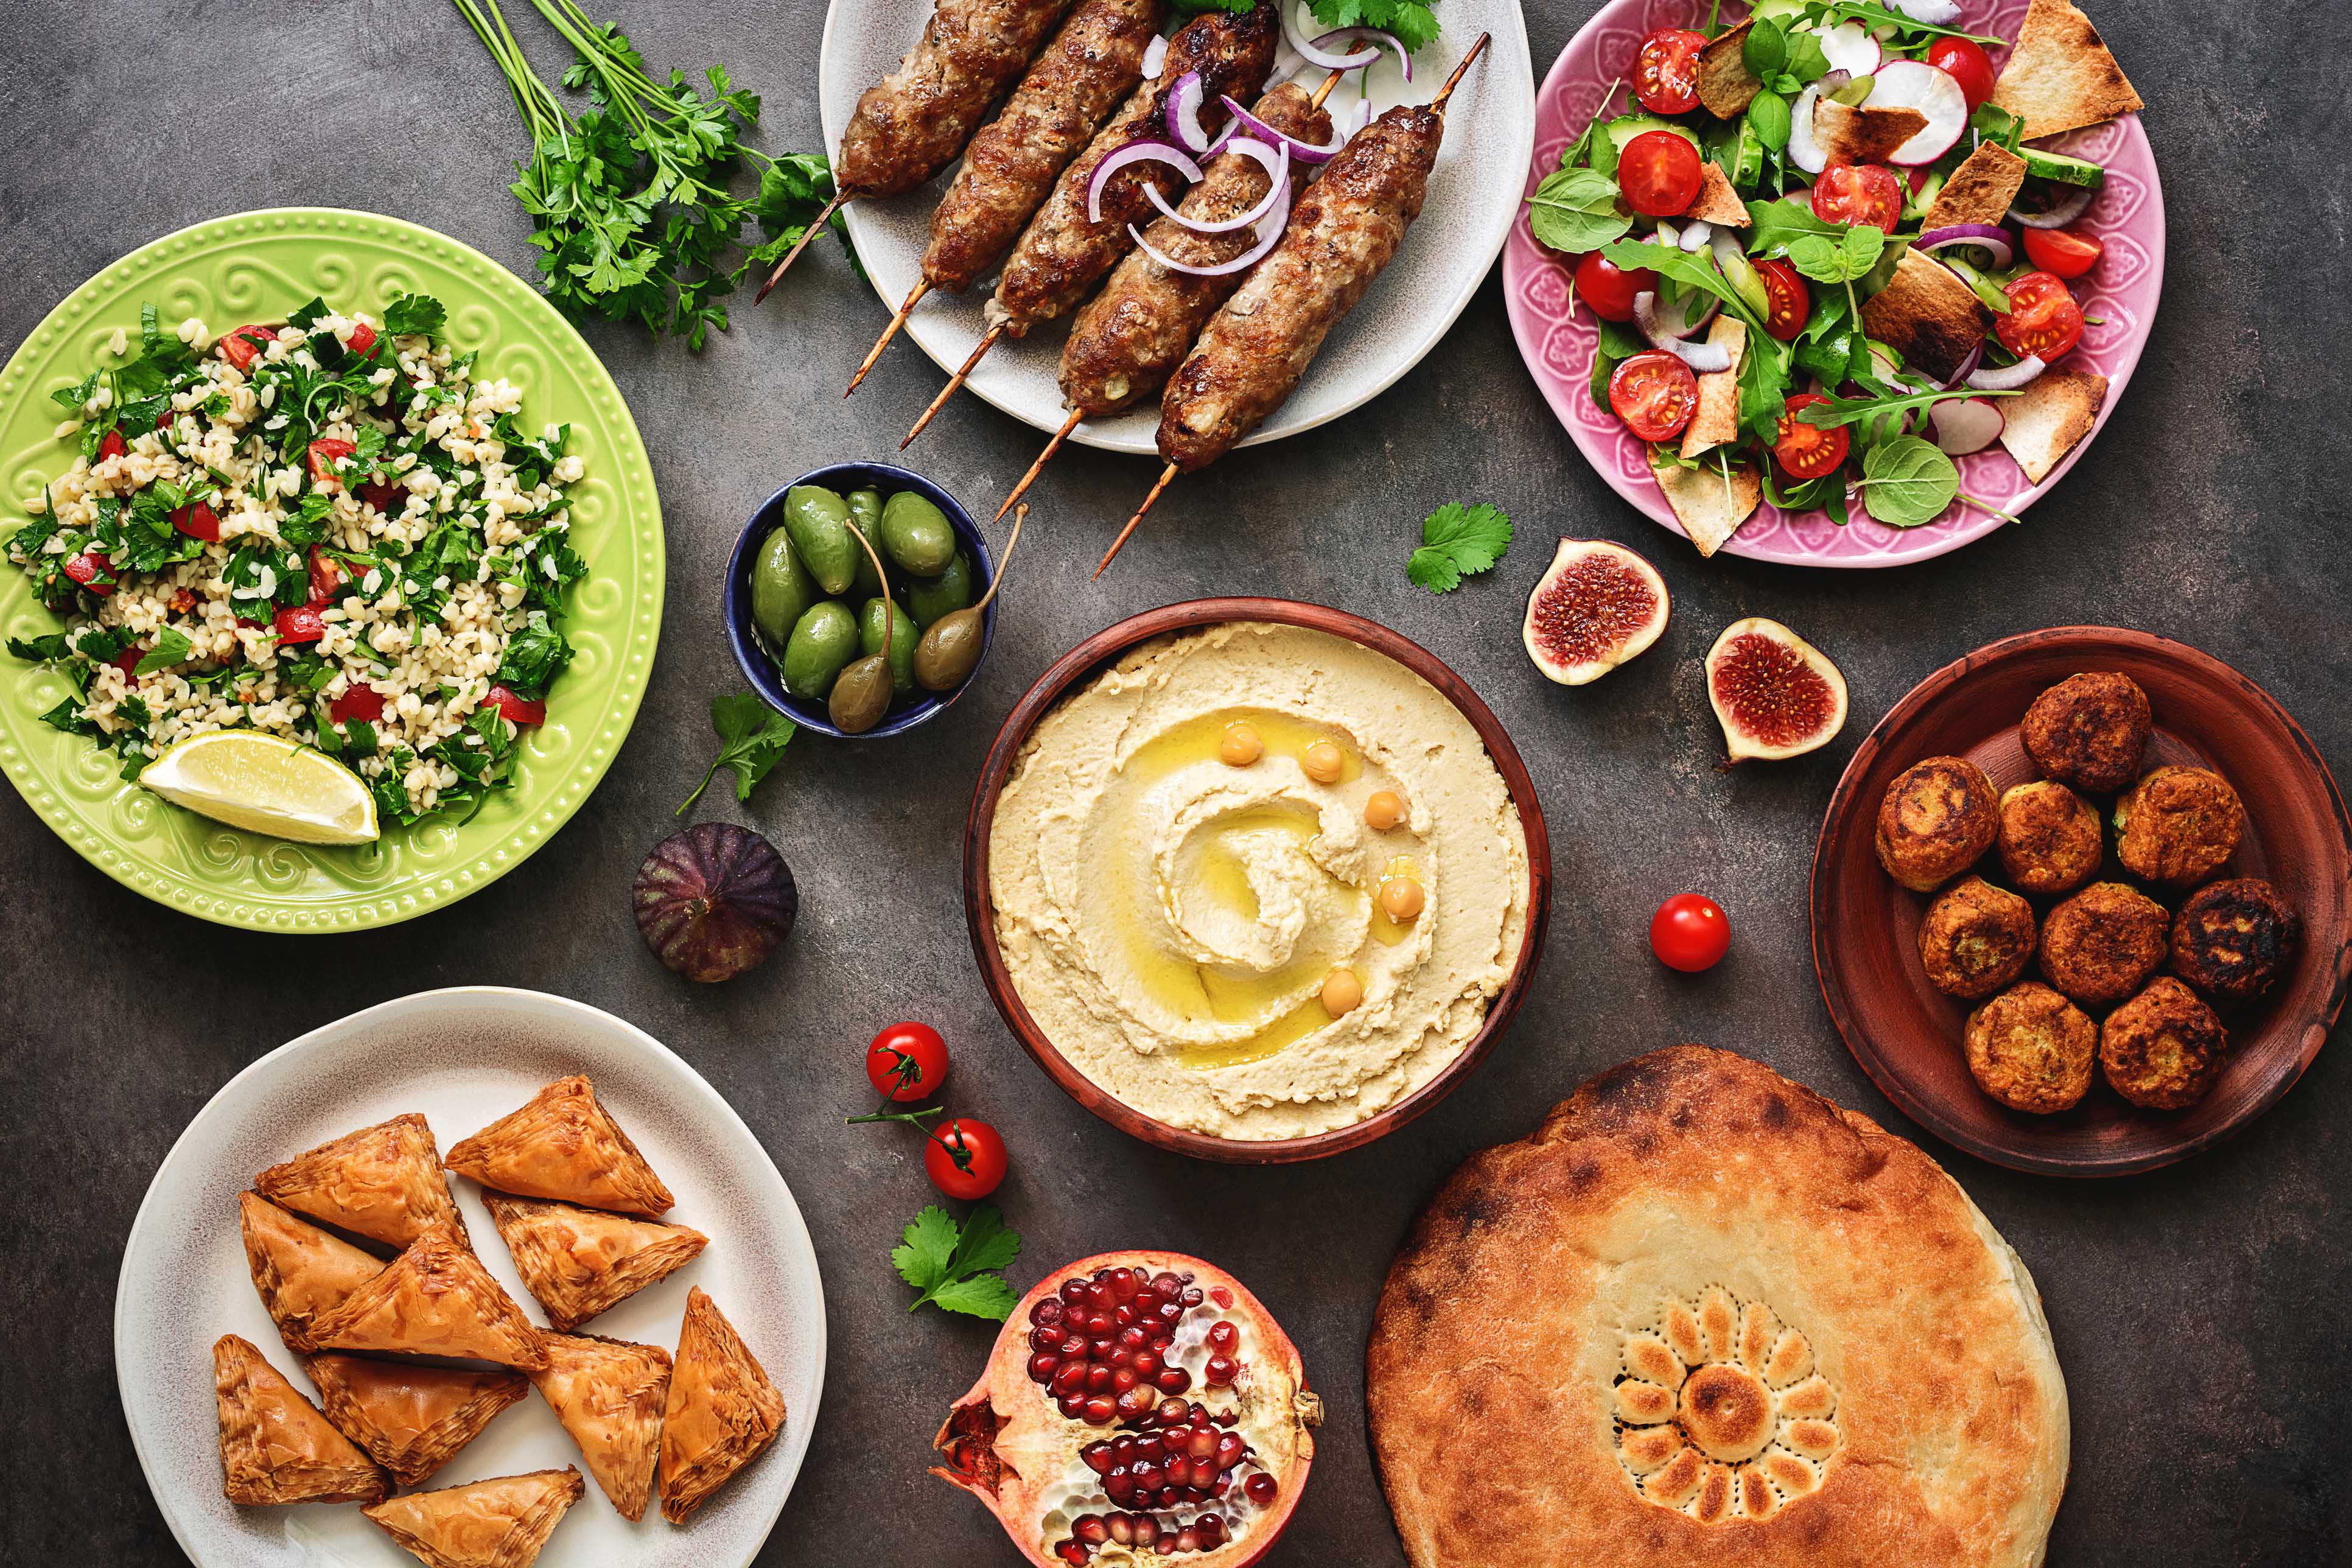 Turkish food on a table